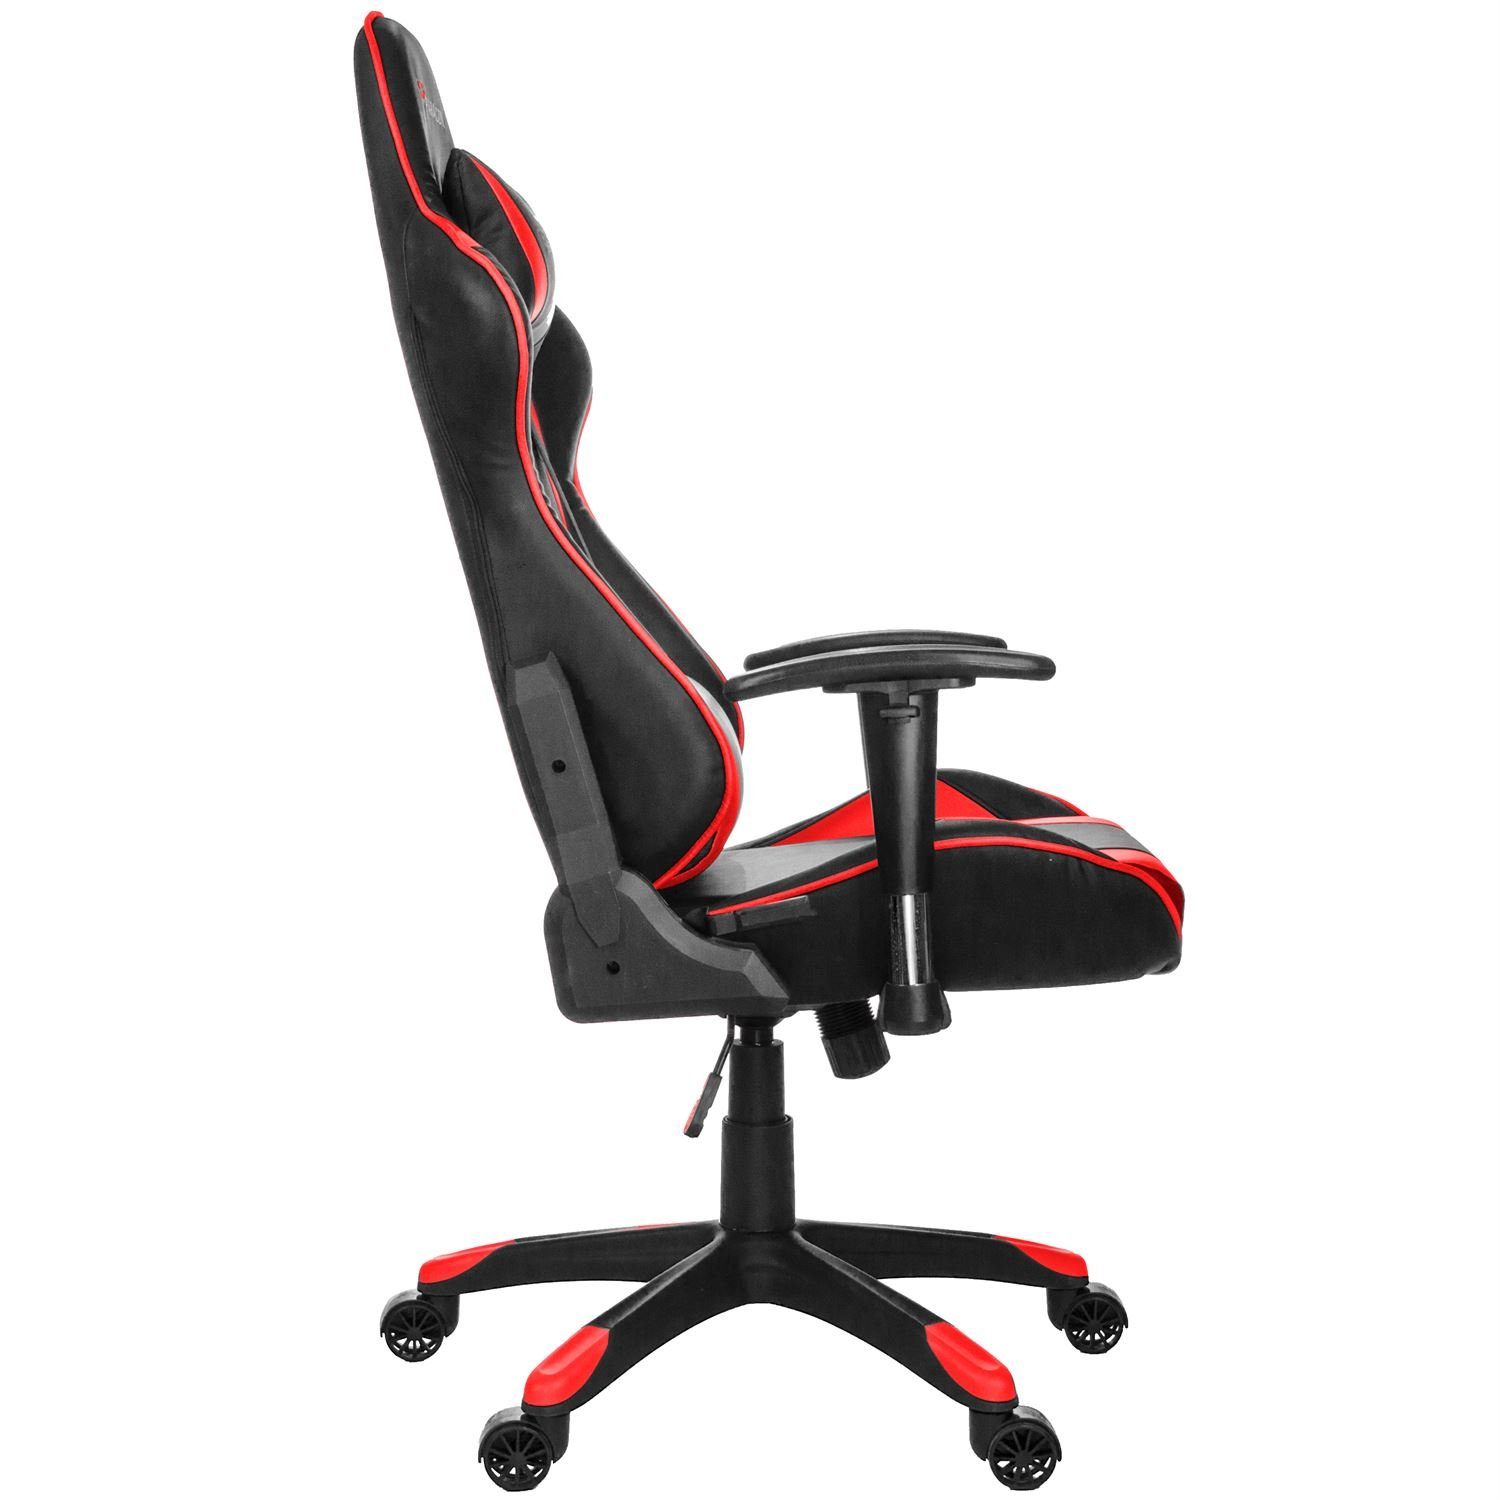 Knight Nackenkissen Gaming-Stuhl Stuhl inkl. Rot ebuy24 Gaming und Paracon